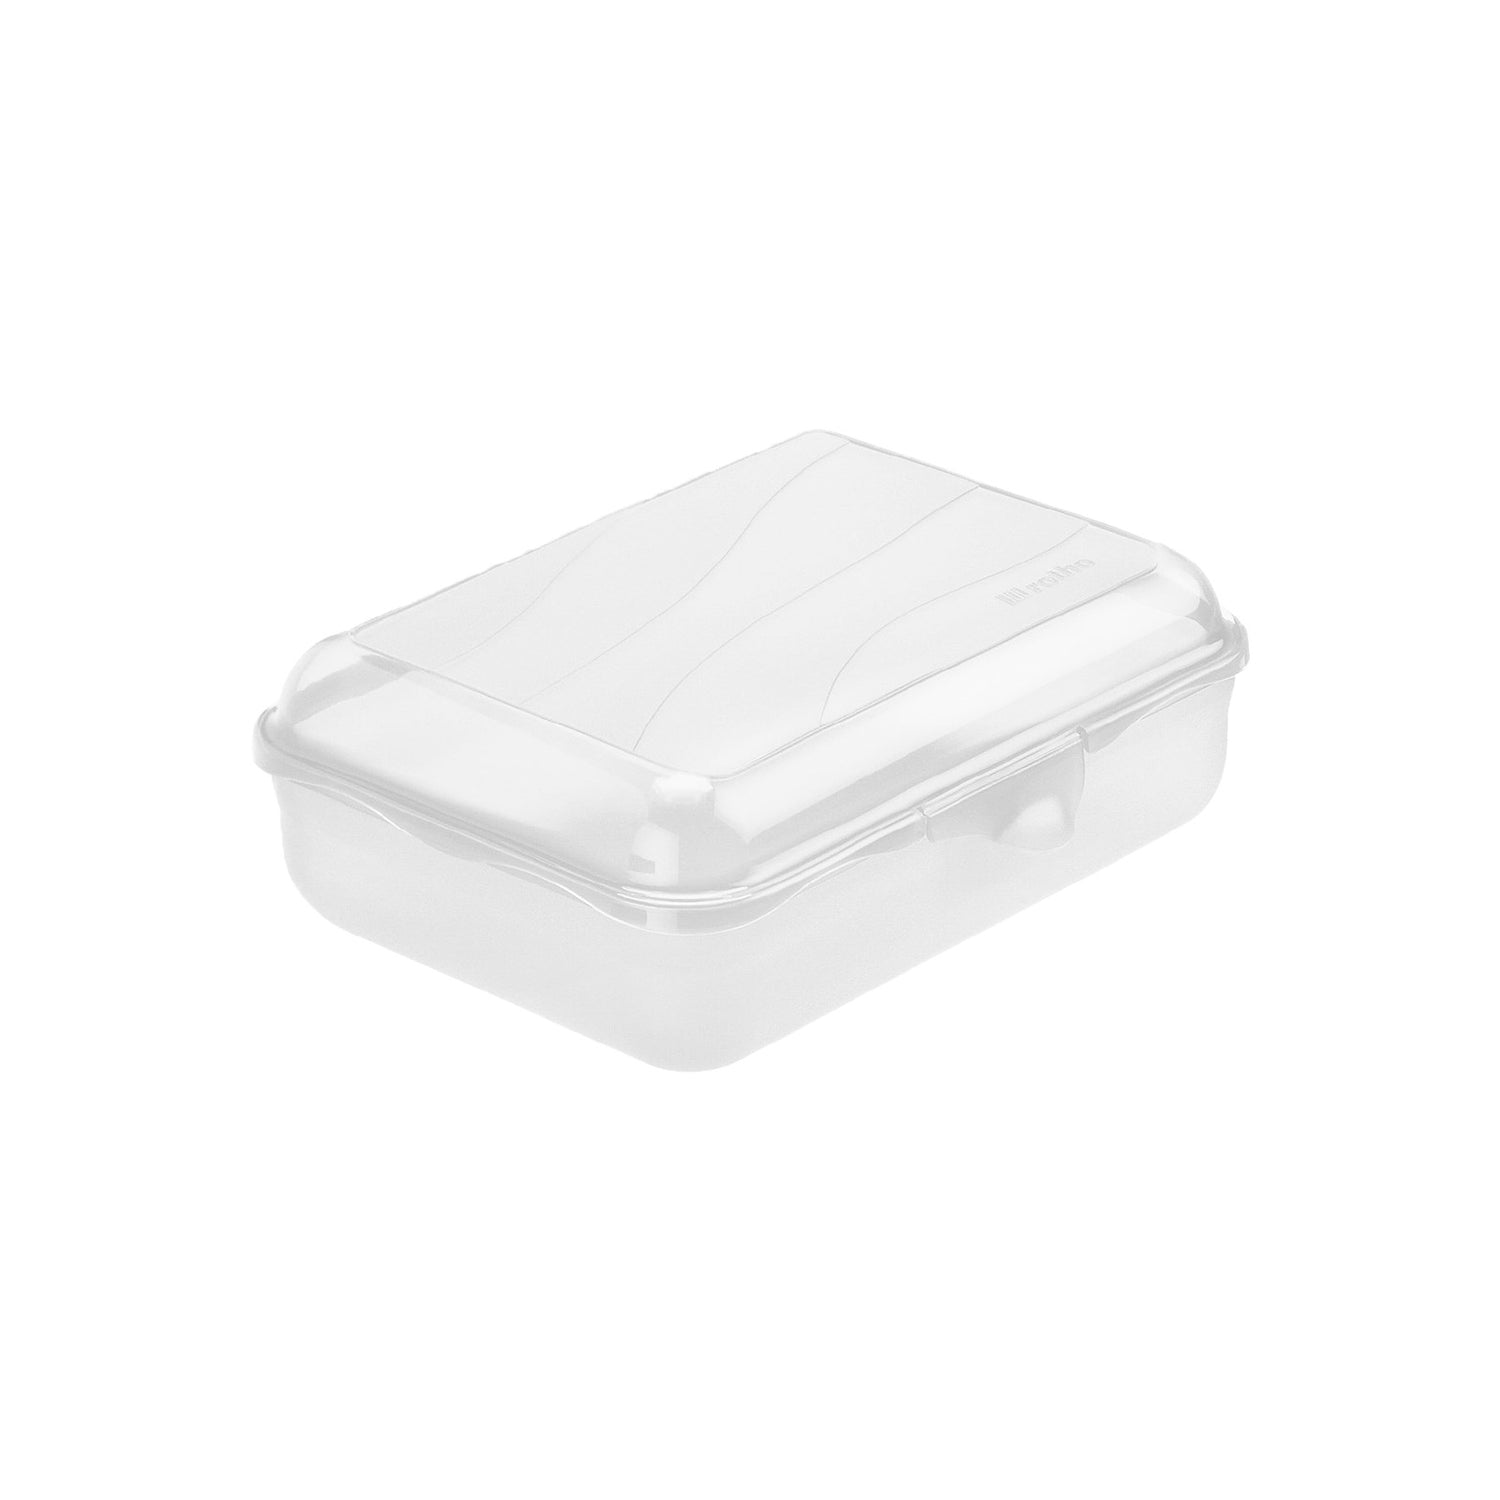 Lunch Box with Clip Closure 1.25L l FUN